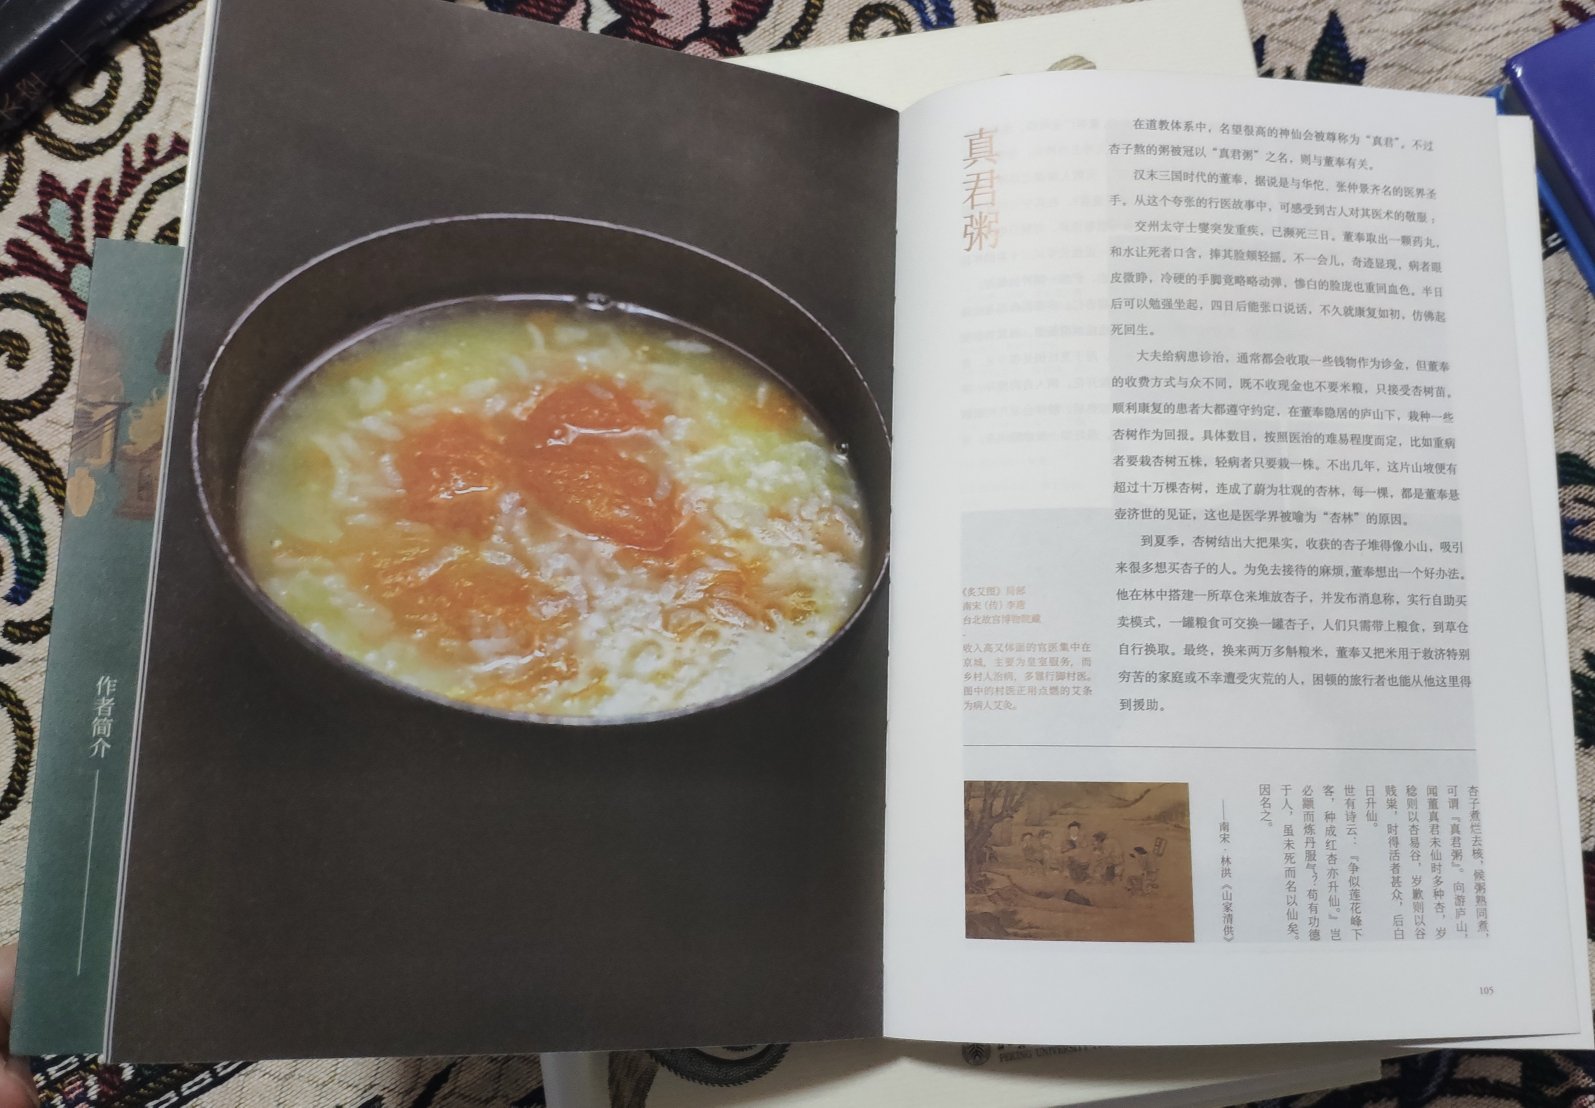 一本非常好的美食的书，讲解一些古书记载的宋朝的流行的饮食。喜欢吃的，喜欢琢磨吃的的人，一定要买一本看看噢！值得推荐购买。